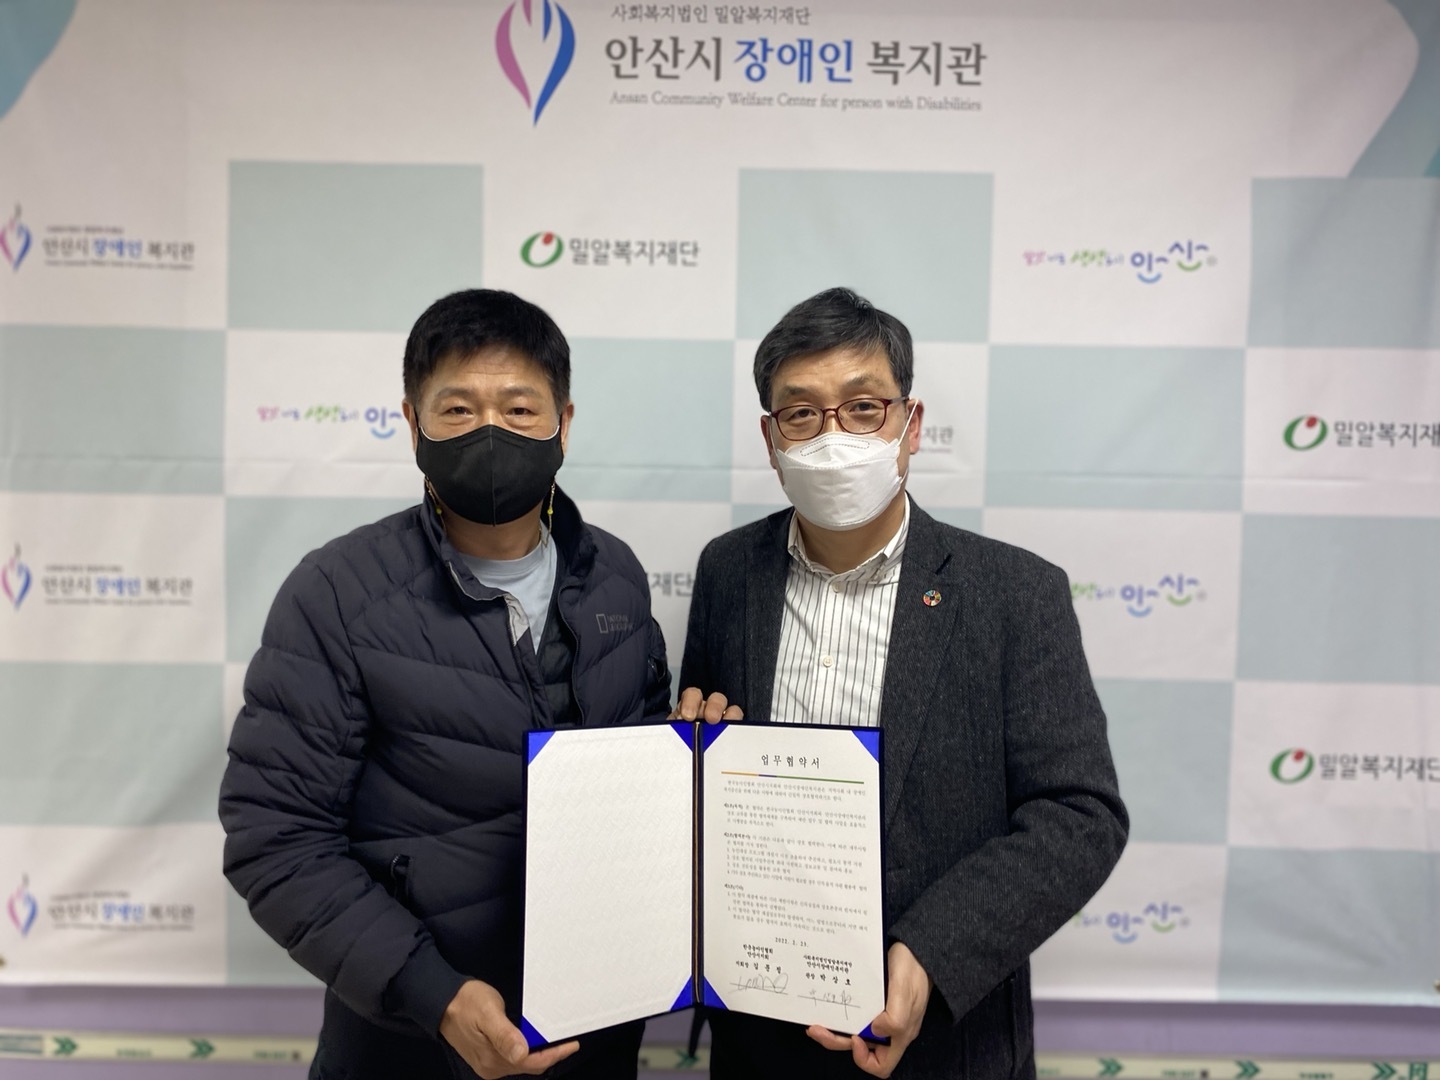 한국농아인협회 안산시지회 관계자와 안산시장애인복지관장님이 나란히 업무협약서를 들고 있는 모습